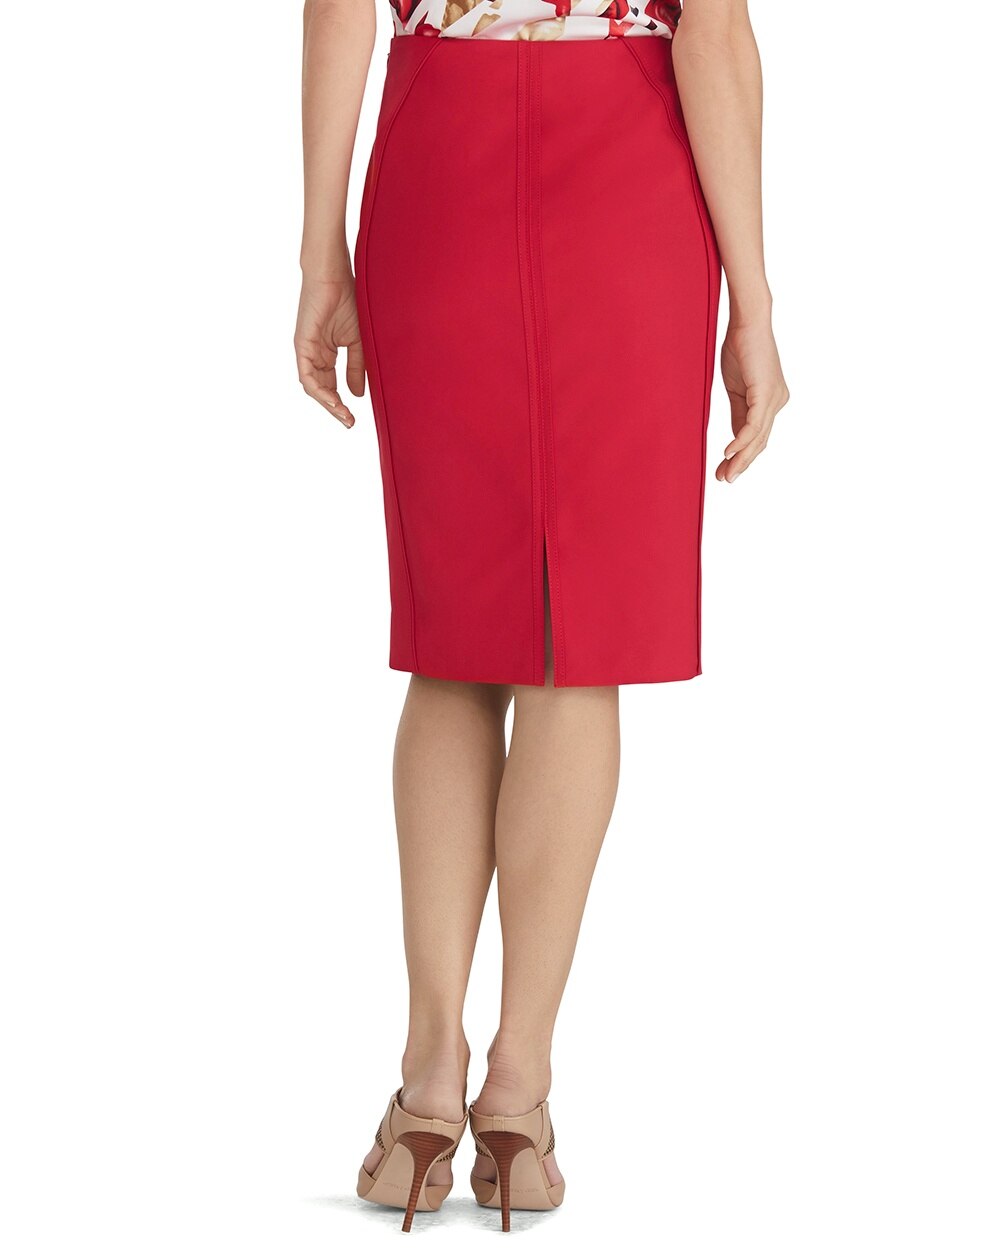 Red Pencil Skirt - White House Black Market